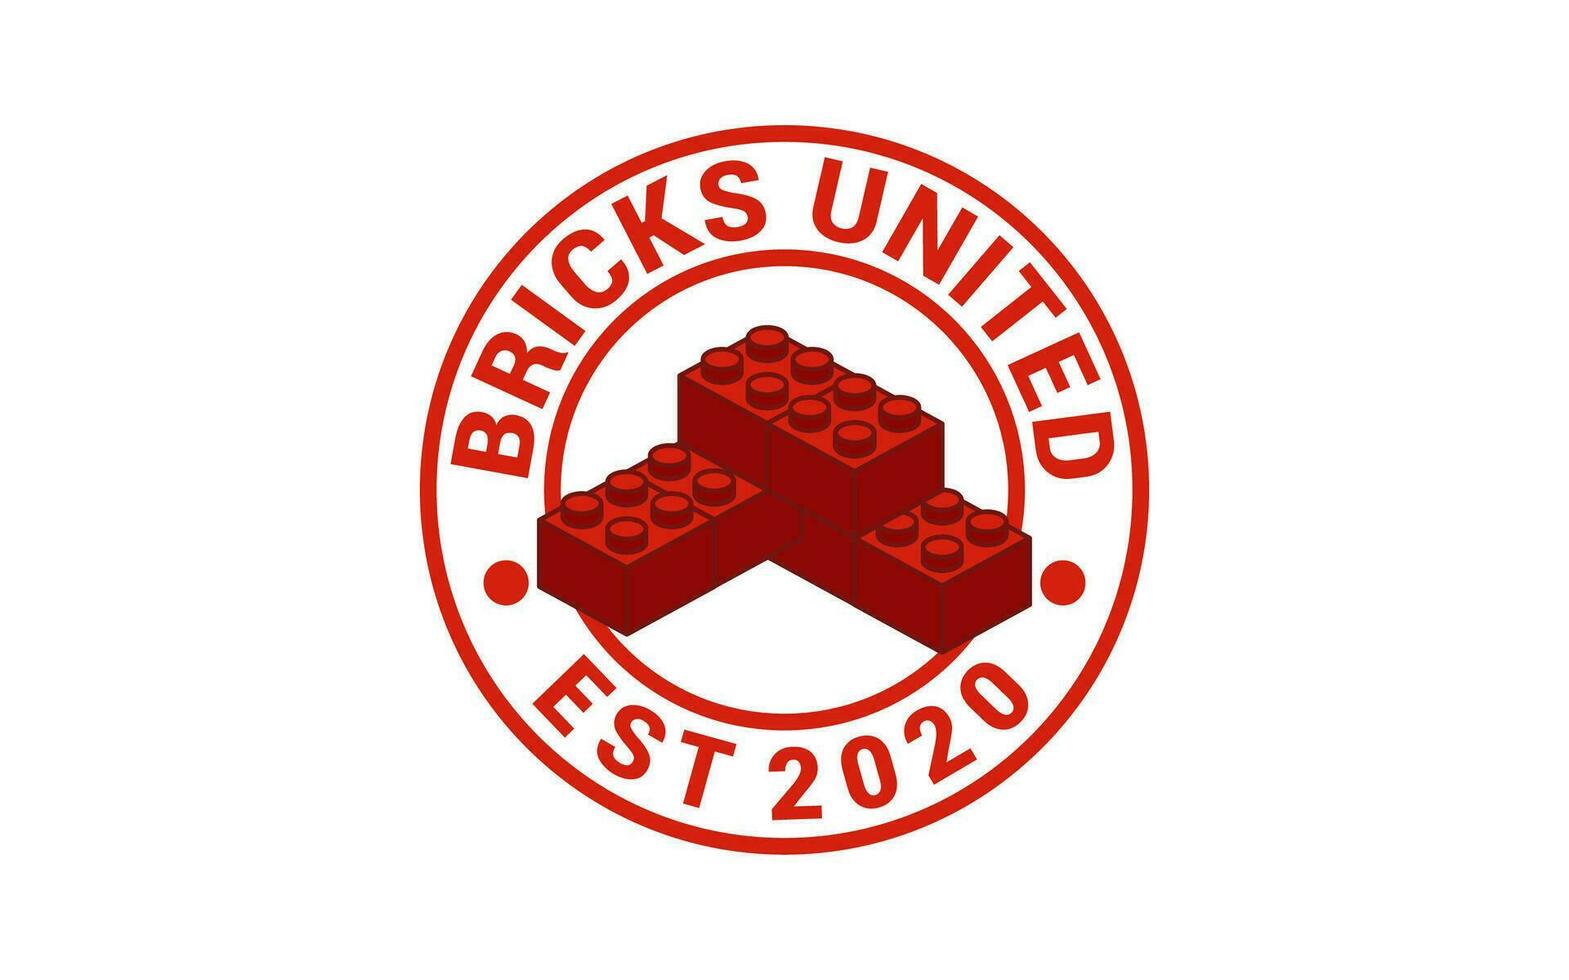 A Vintage badge building block design logo vector